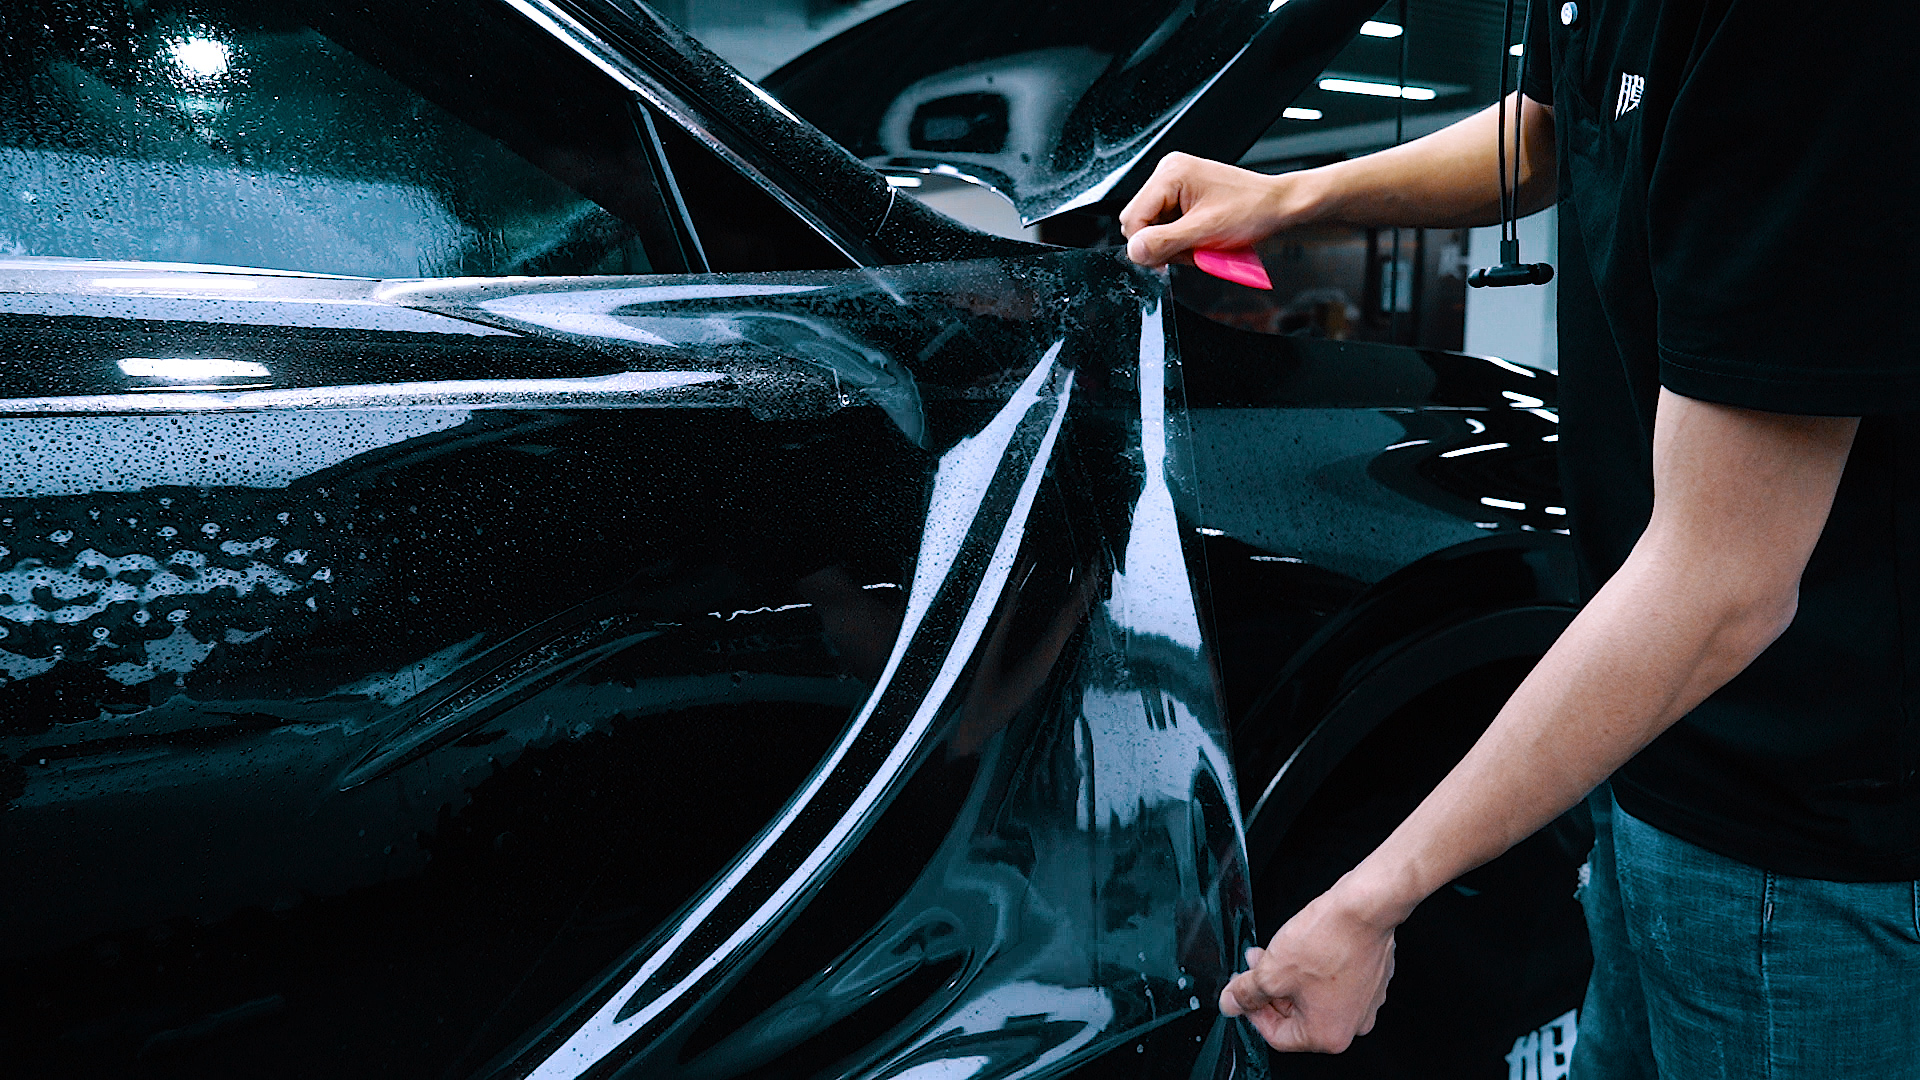 打蜡、封釉、镀晶、隐形车衣的区别？汽车漆面养护你会怎么选？